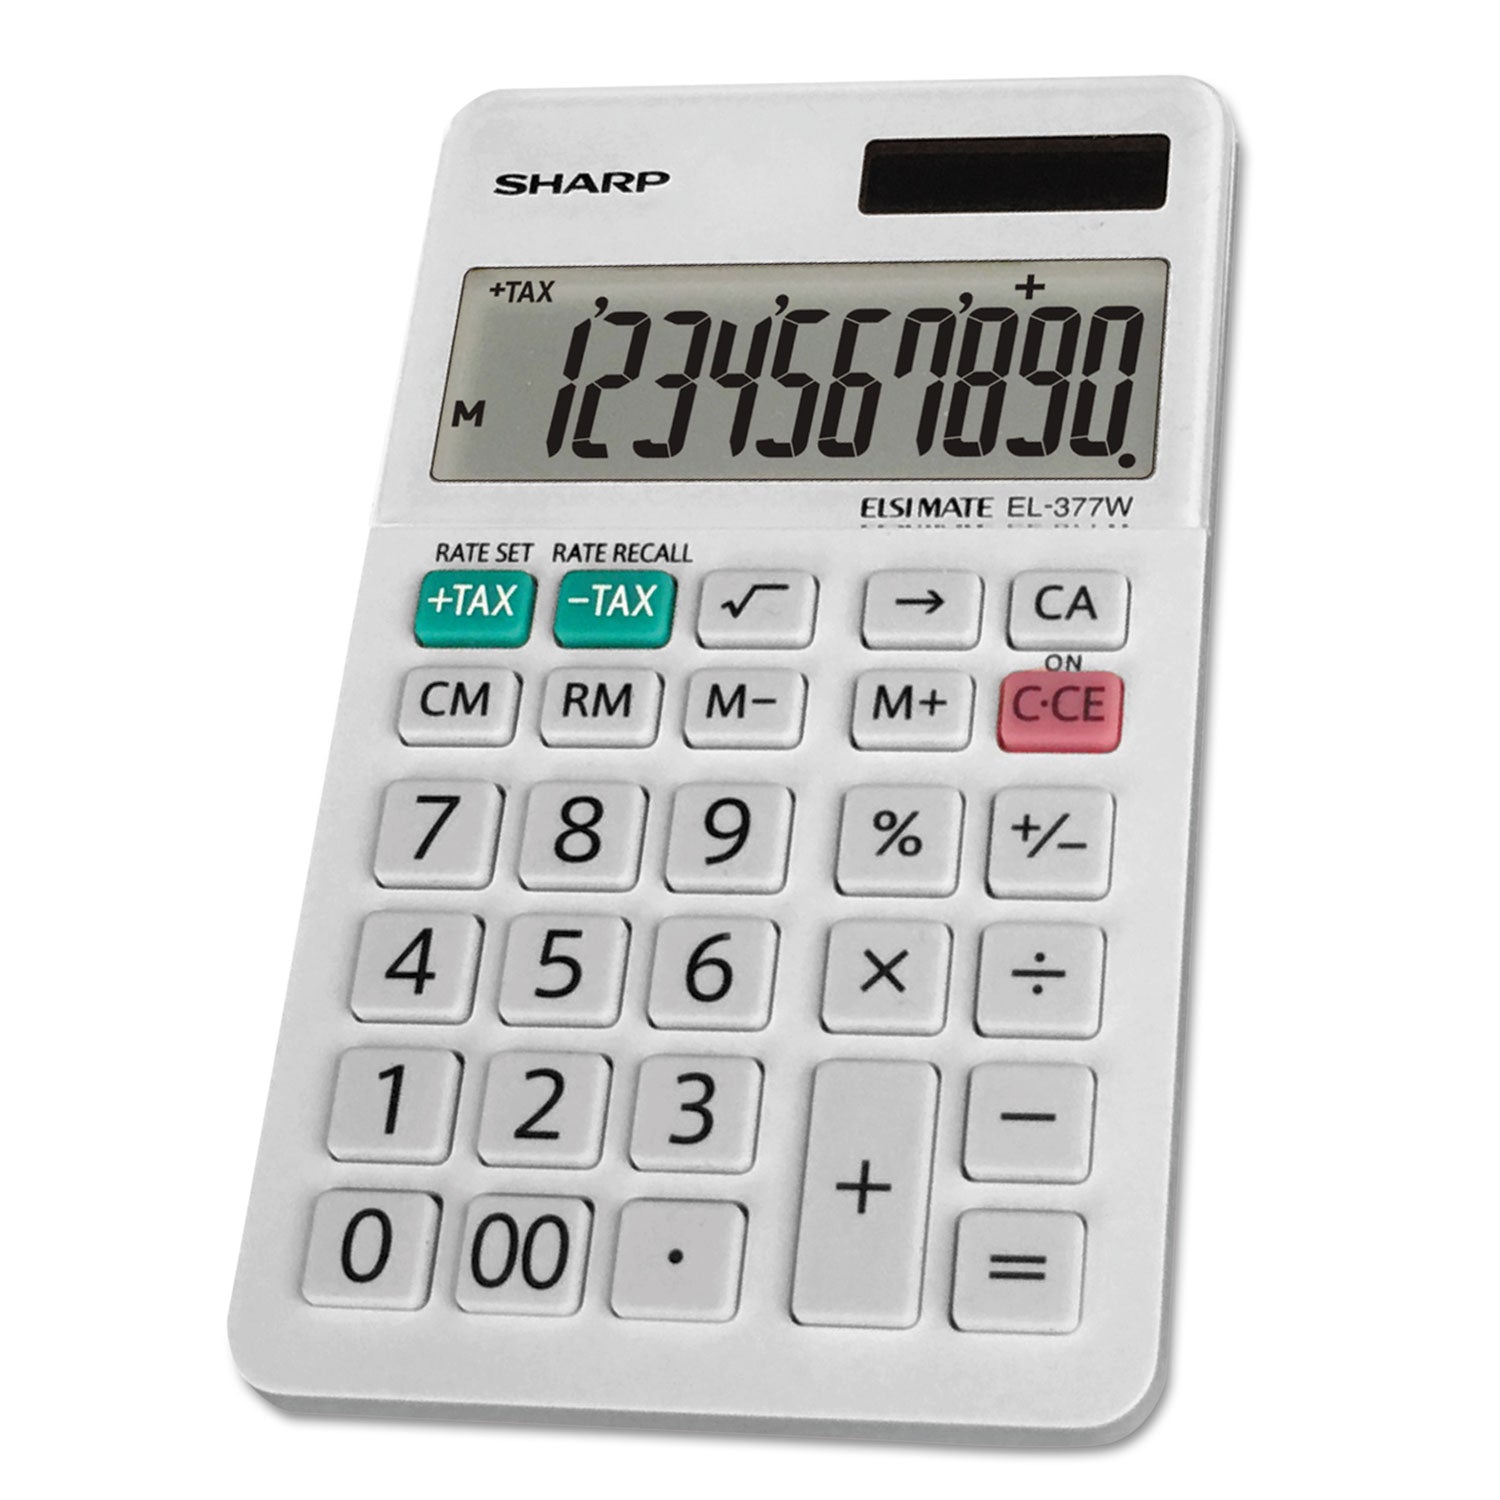 el-377wb-large-pocket-calculator-10-digit-lcd_shrel377wb - 1